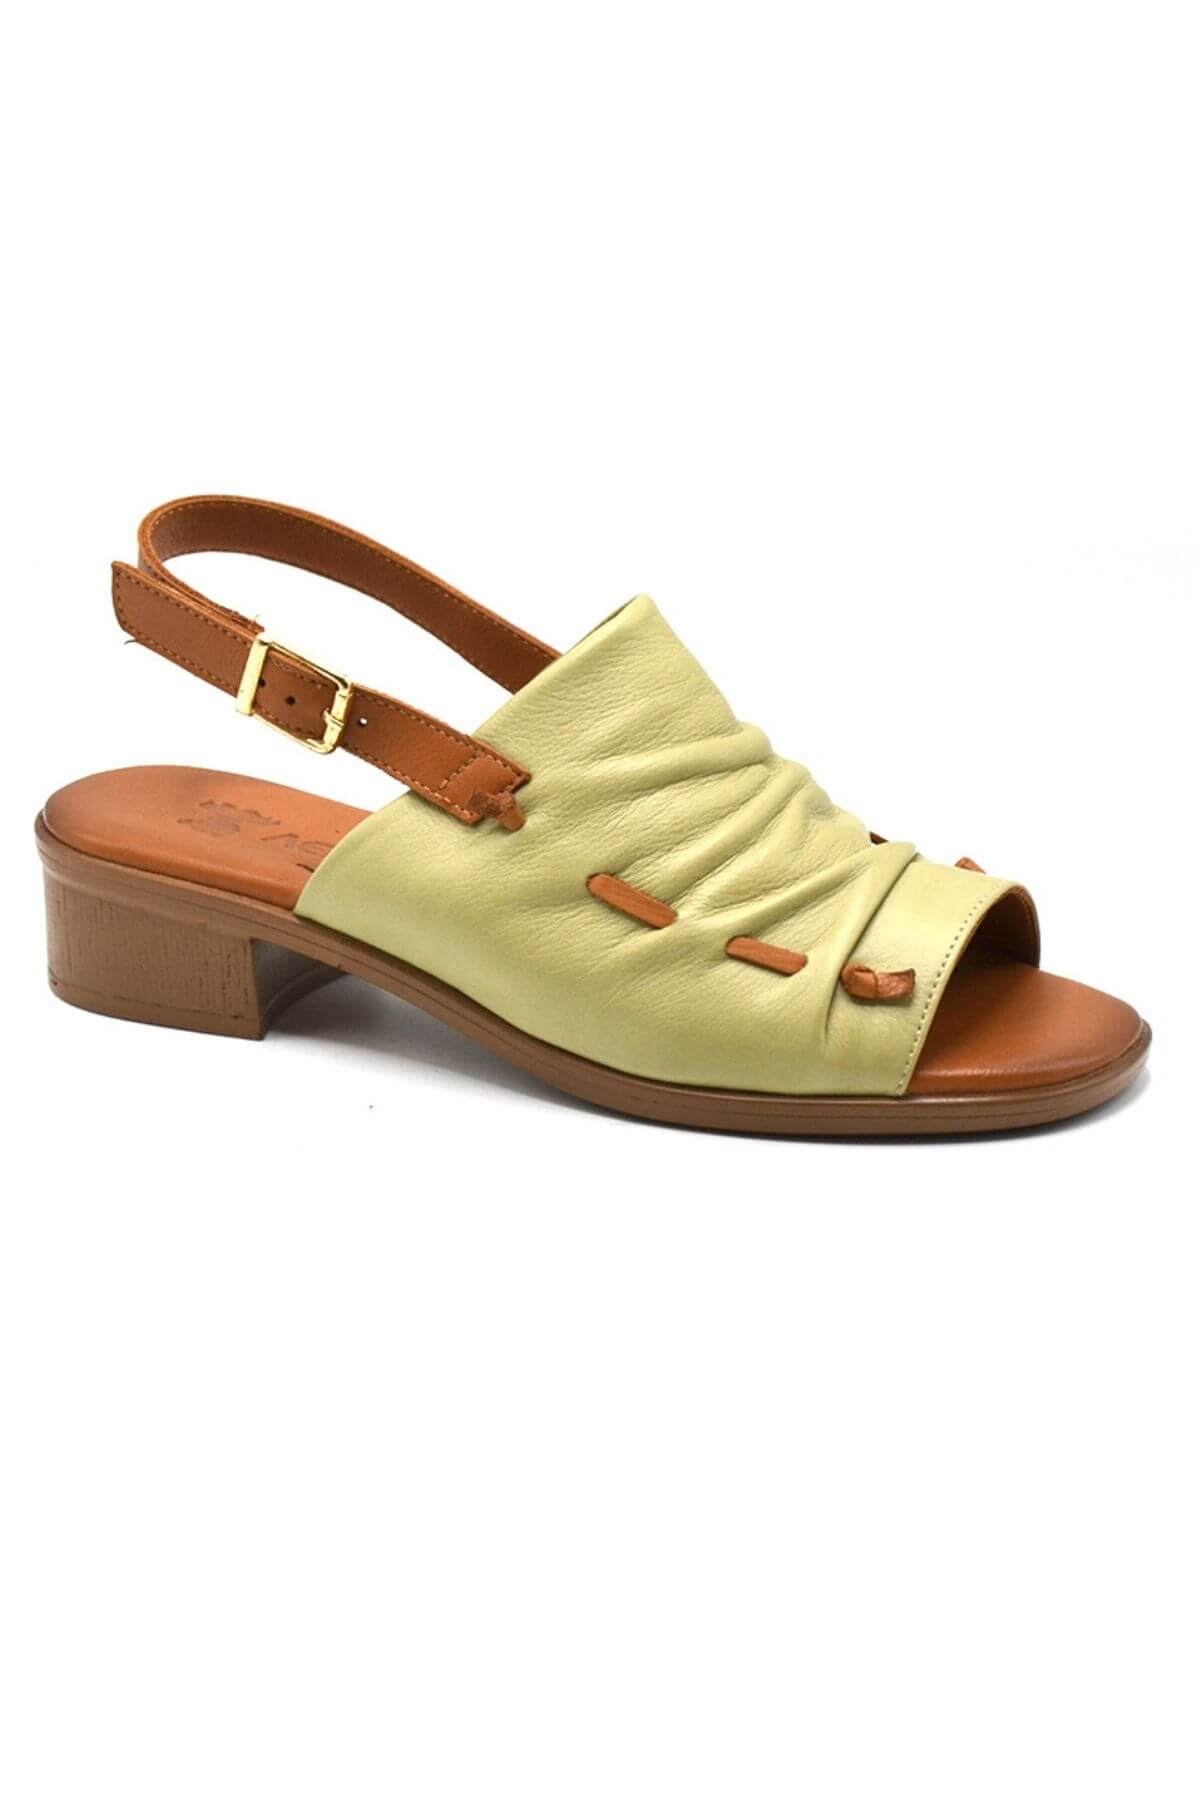 Kadın Deri Sandalet S.Yeşili 23026021Y